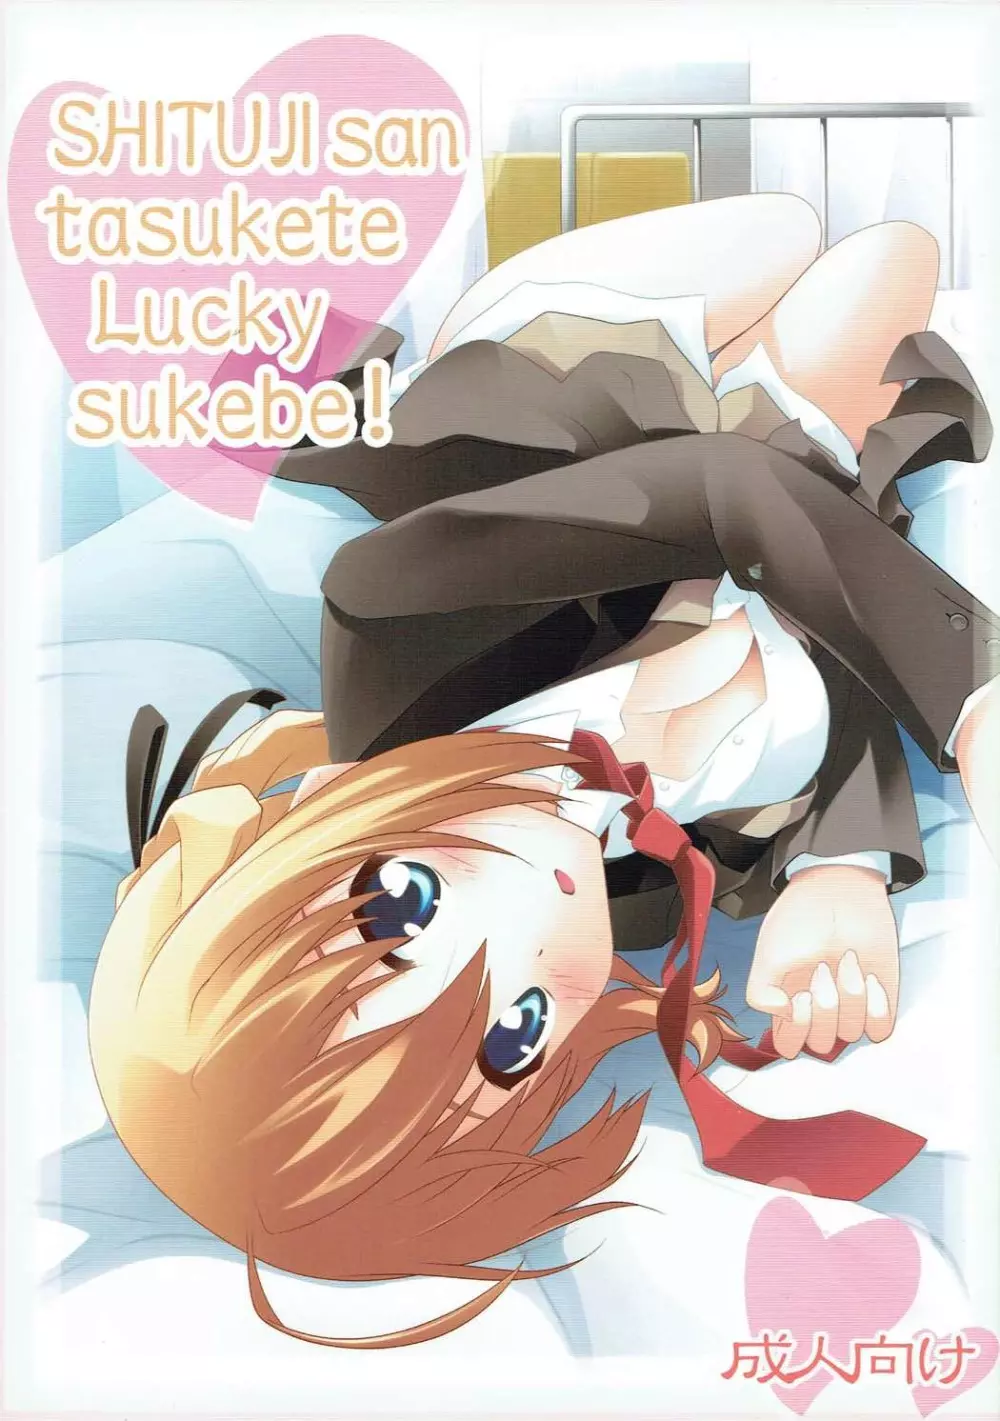 SHITUJI san tasukete Lucky sukebe! - page1